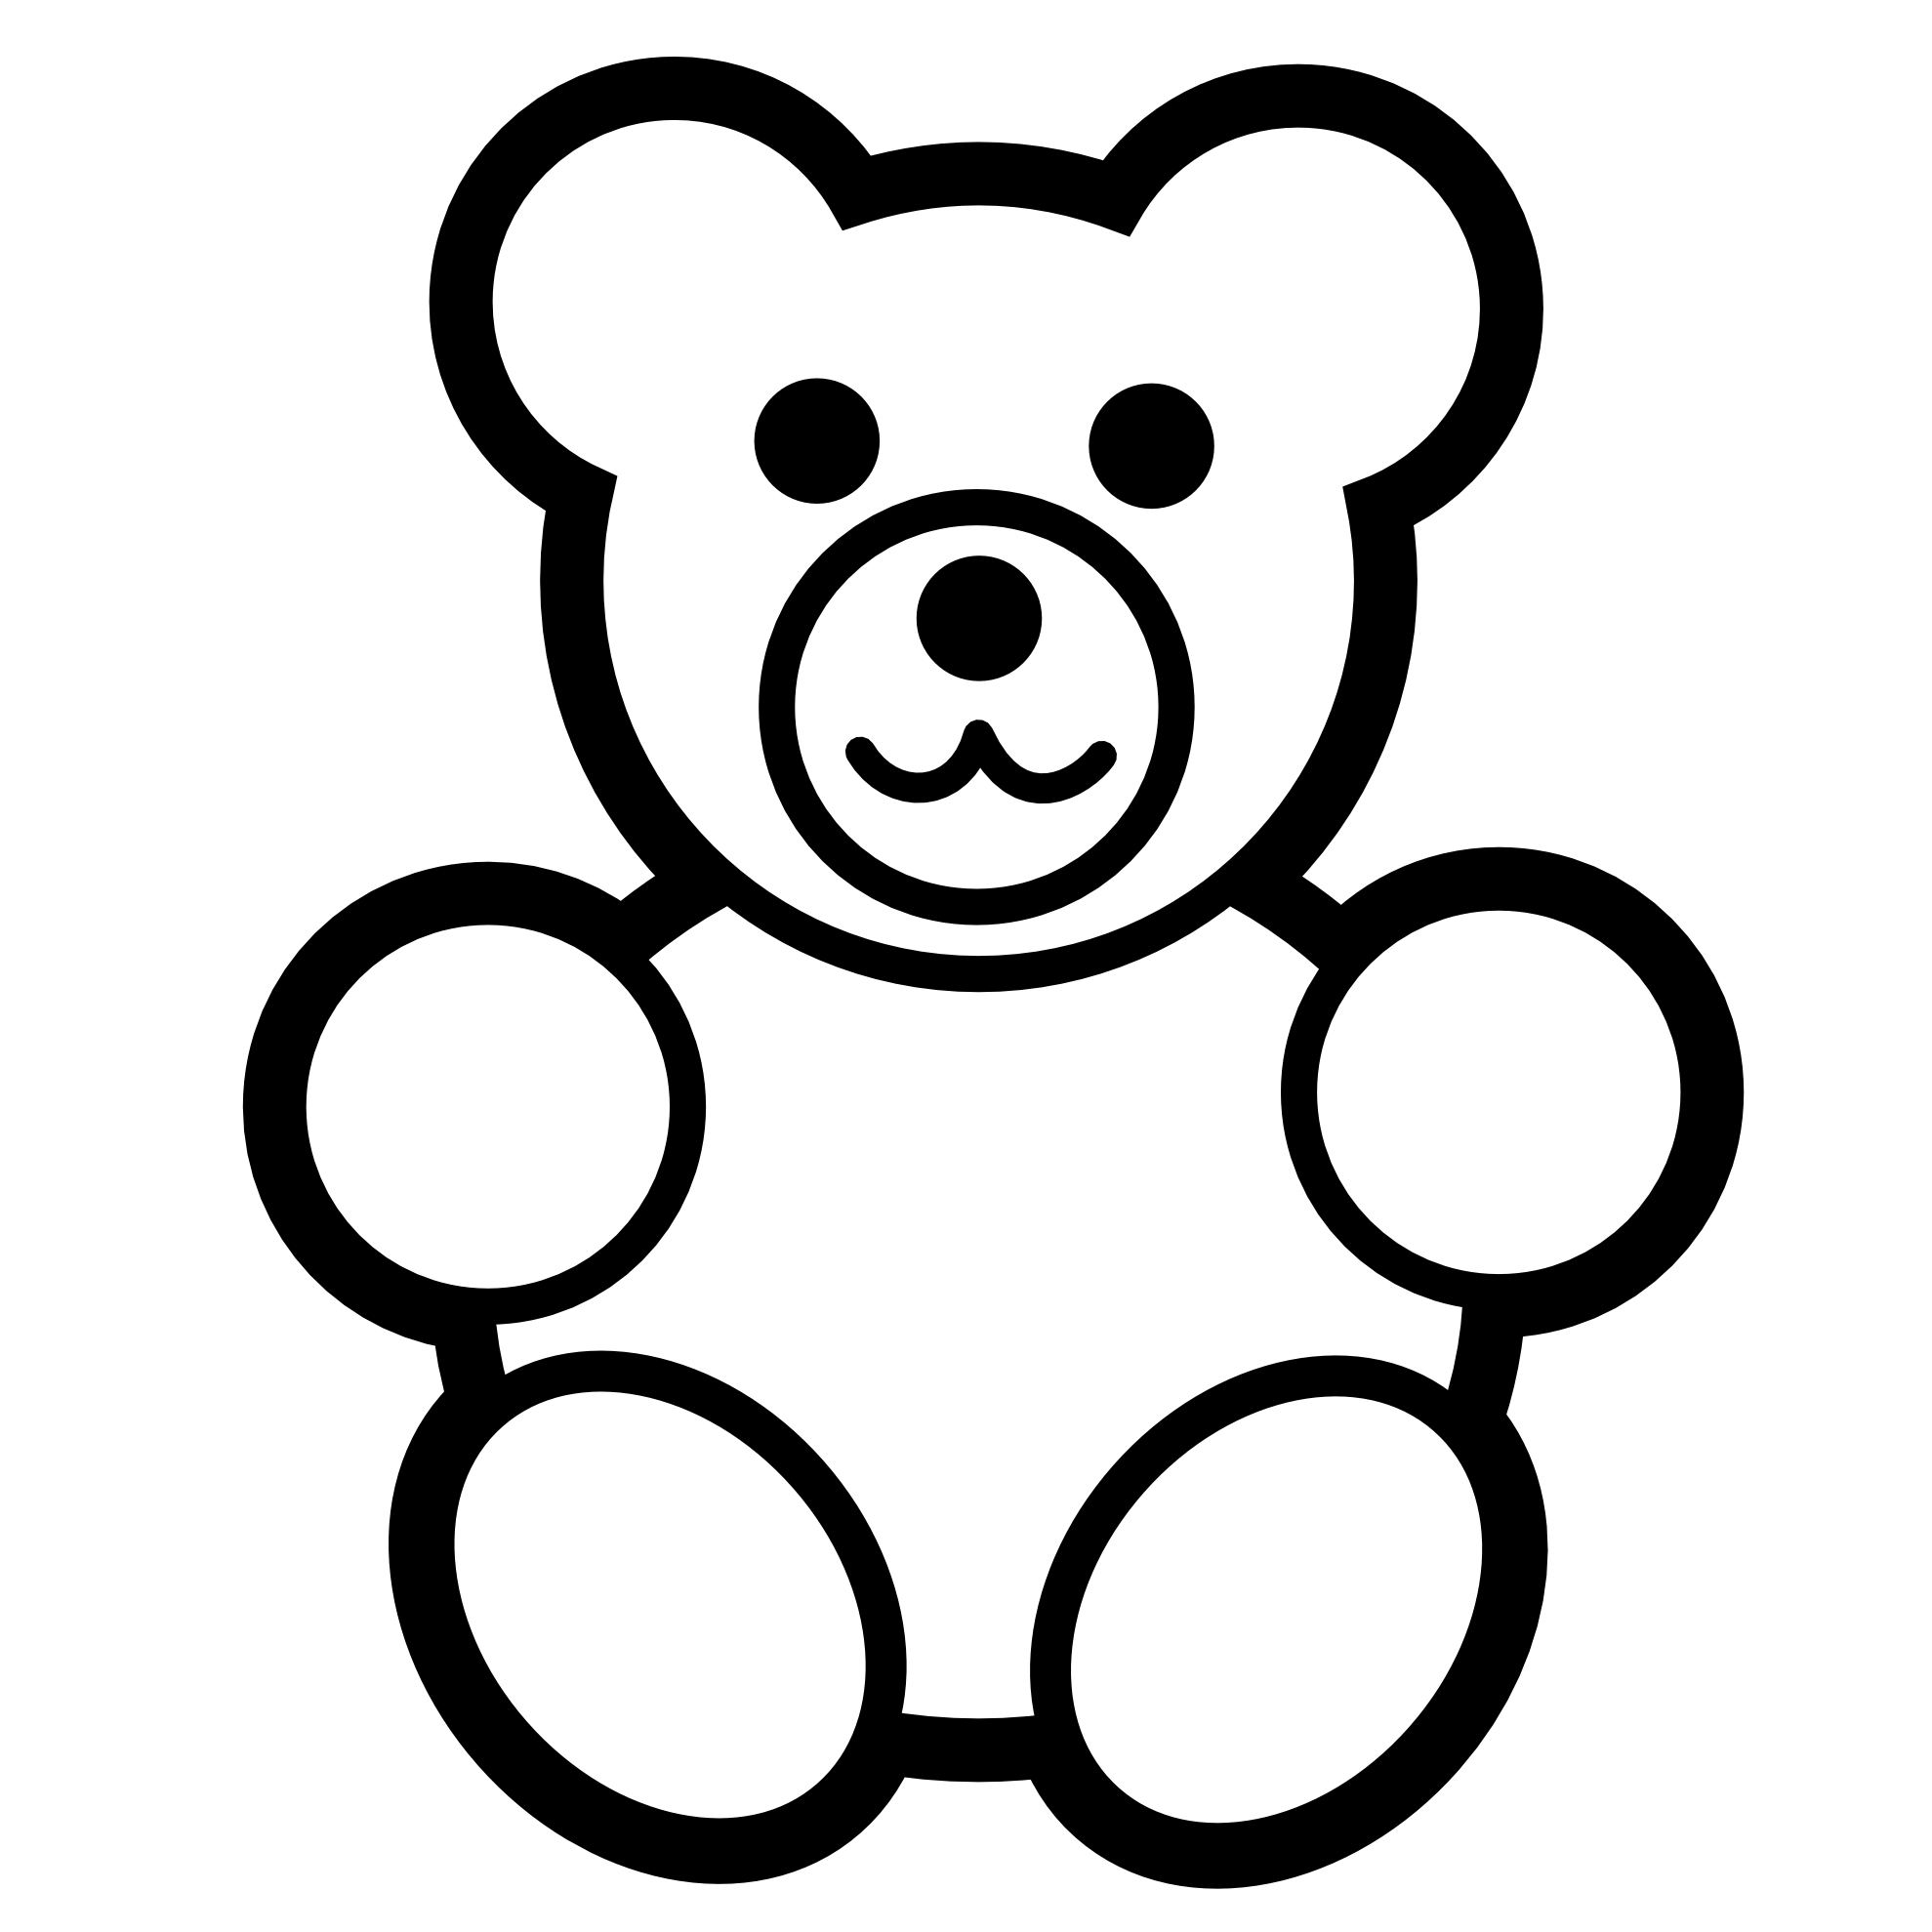 Teddy Bear On Teddy Bears And Bears Clipart